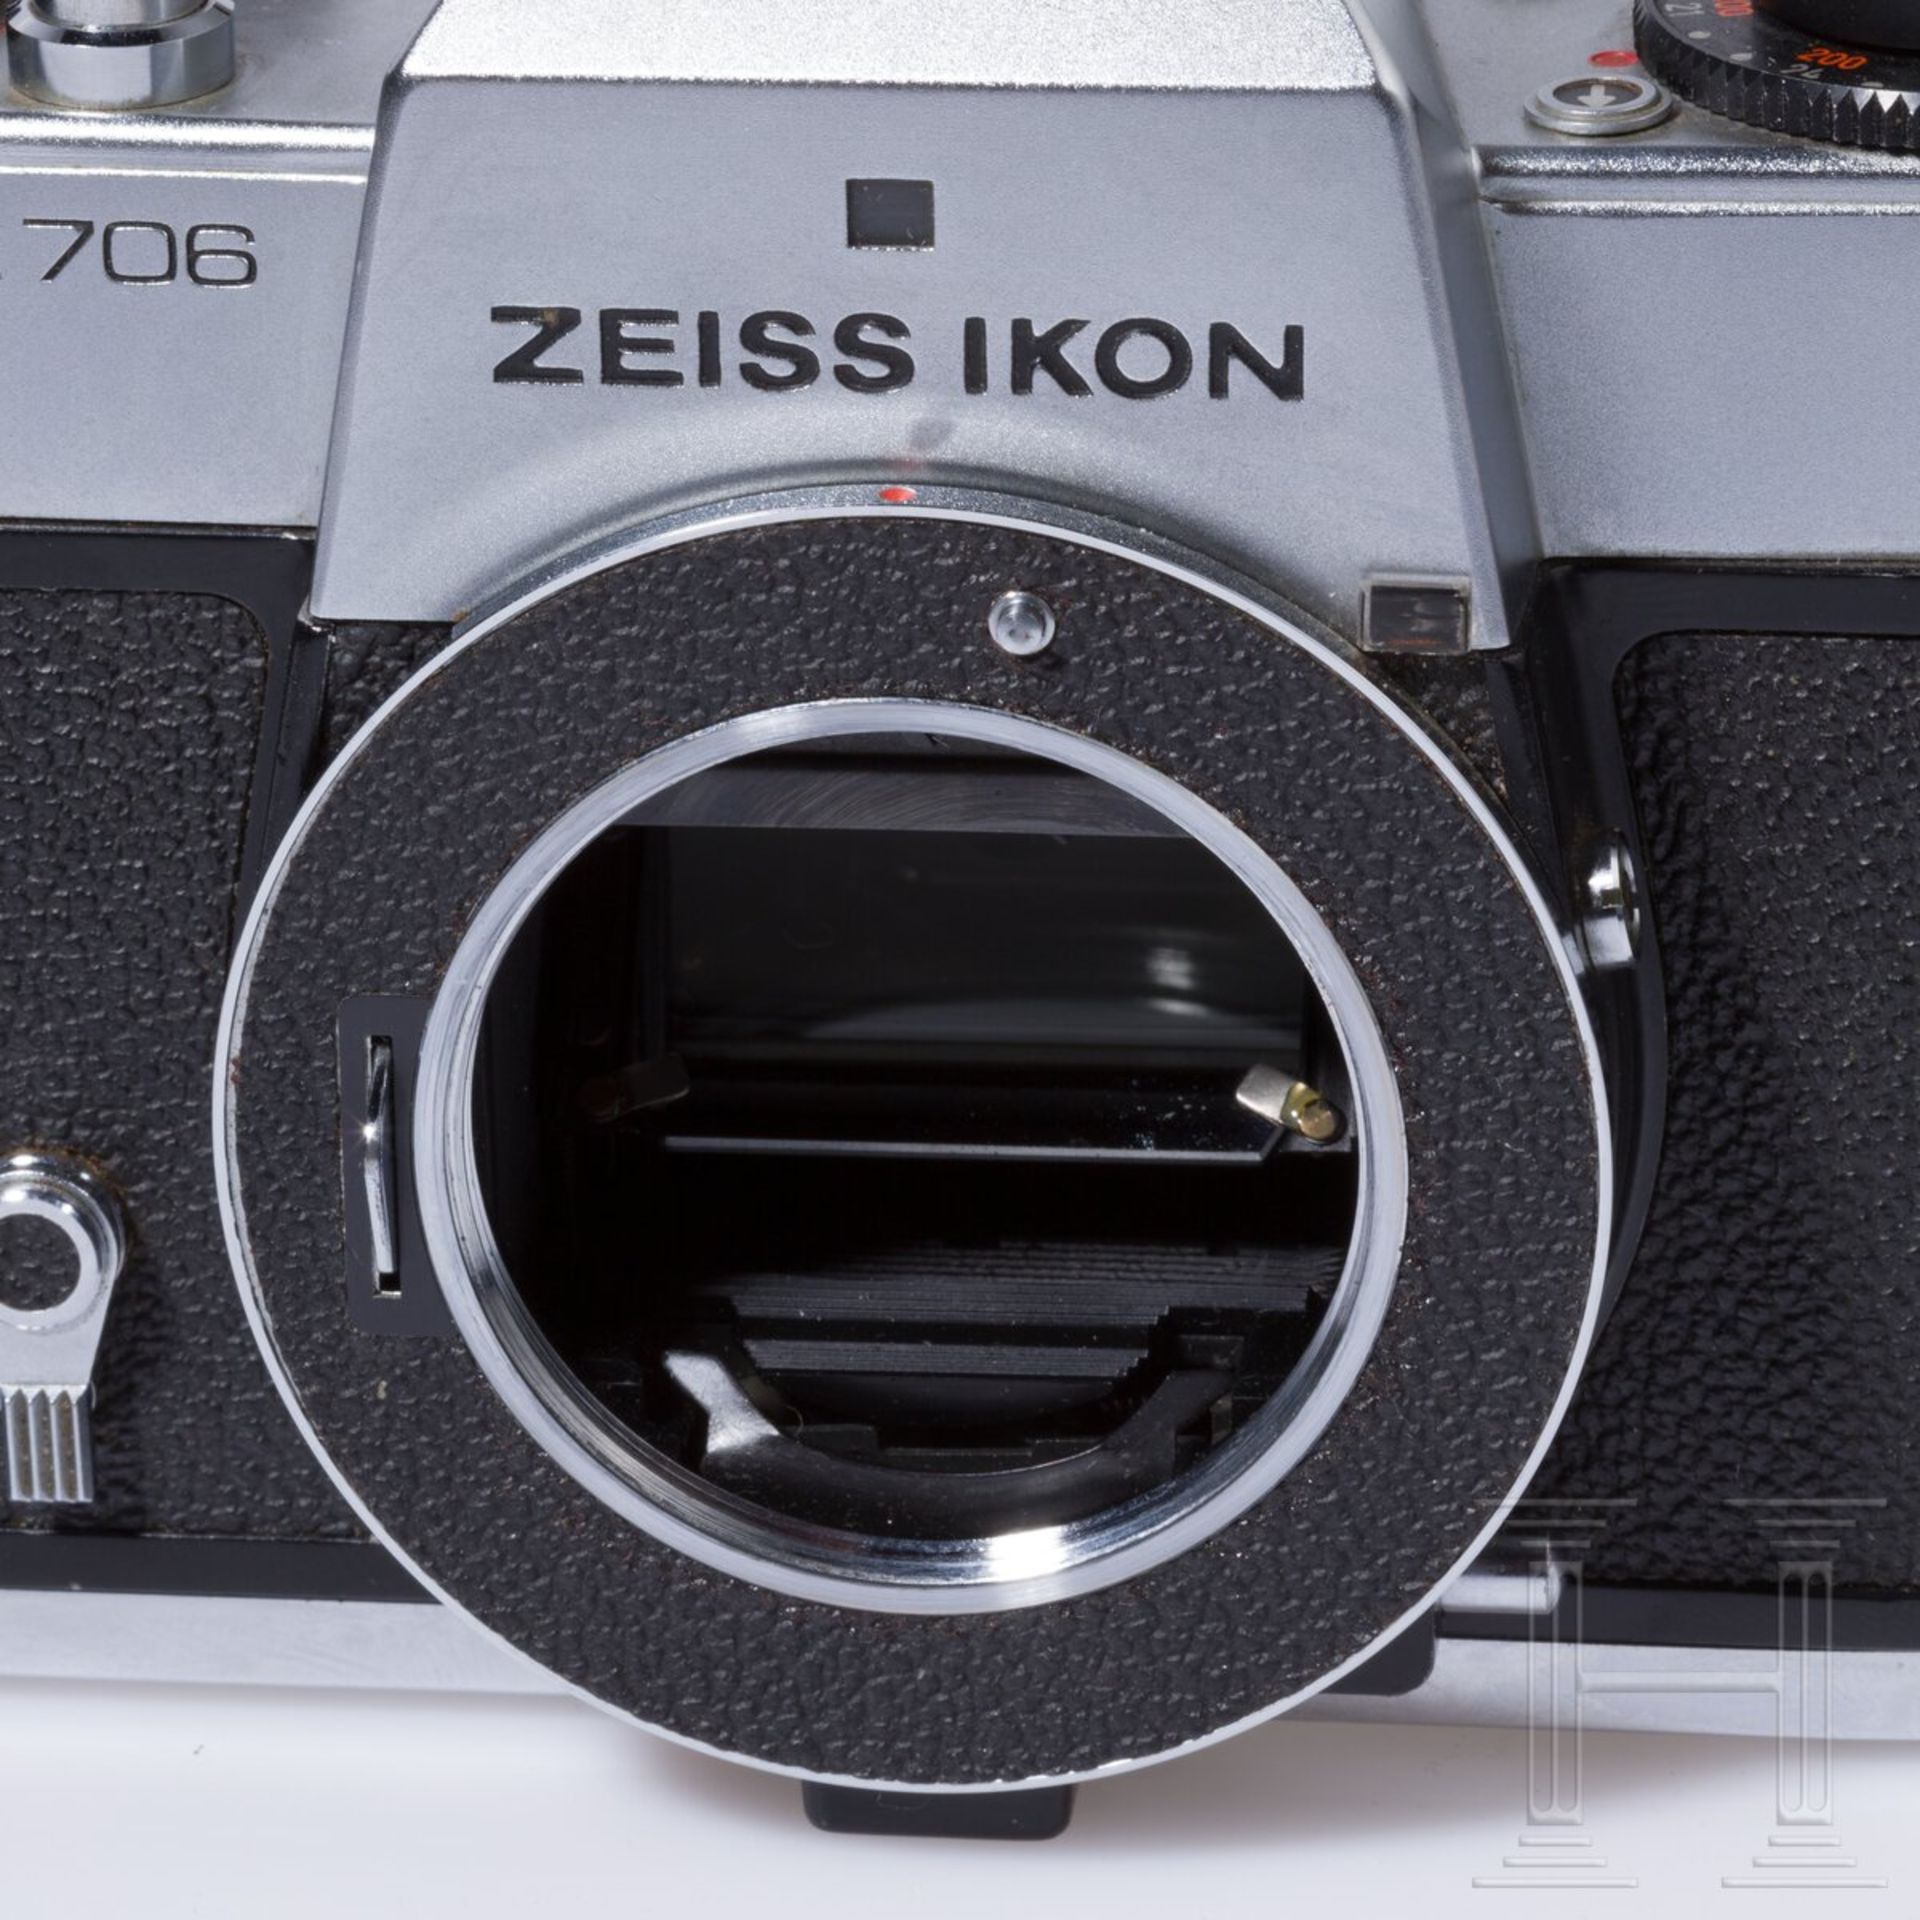 Zeiss Ikon SL 706 mit Carl Zeiss Tessar 50 mm, Skoparex 35 mm, Super-Dynarex 135 mm - Bild 7 aus 11